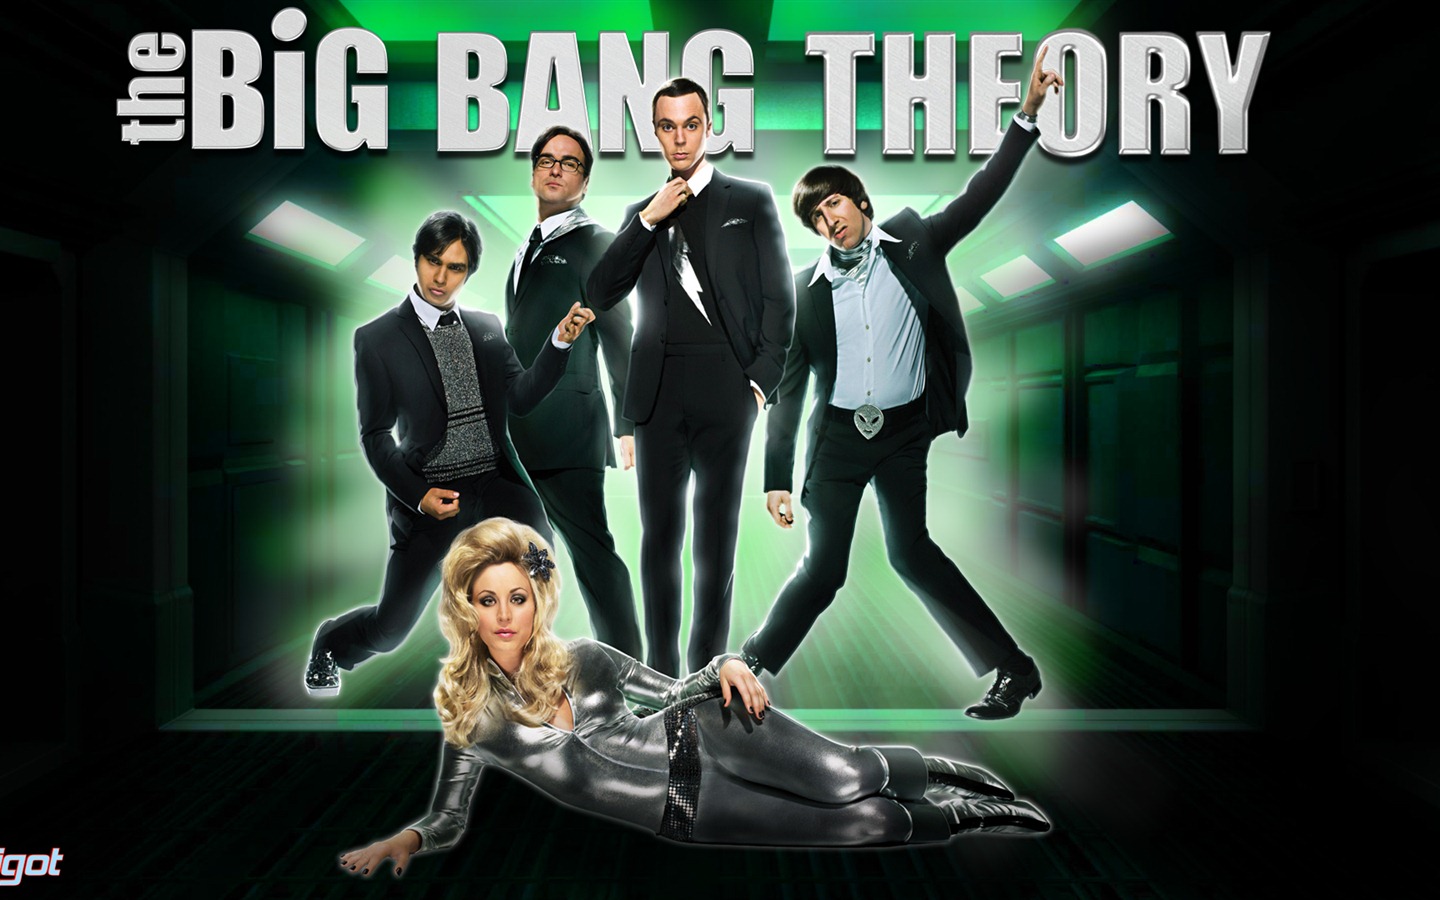 The Big Bang Theory 生活大爆炸 电视剧高清壁纸6 - 1440x900